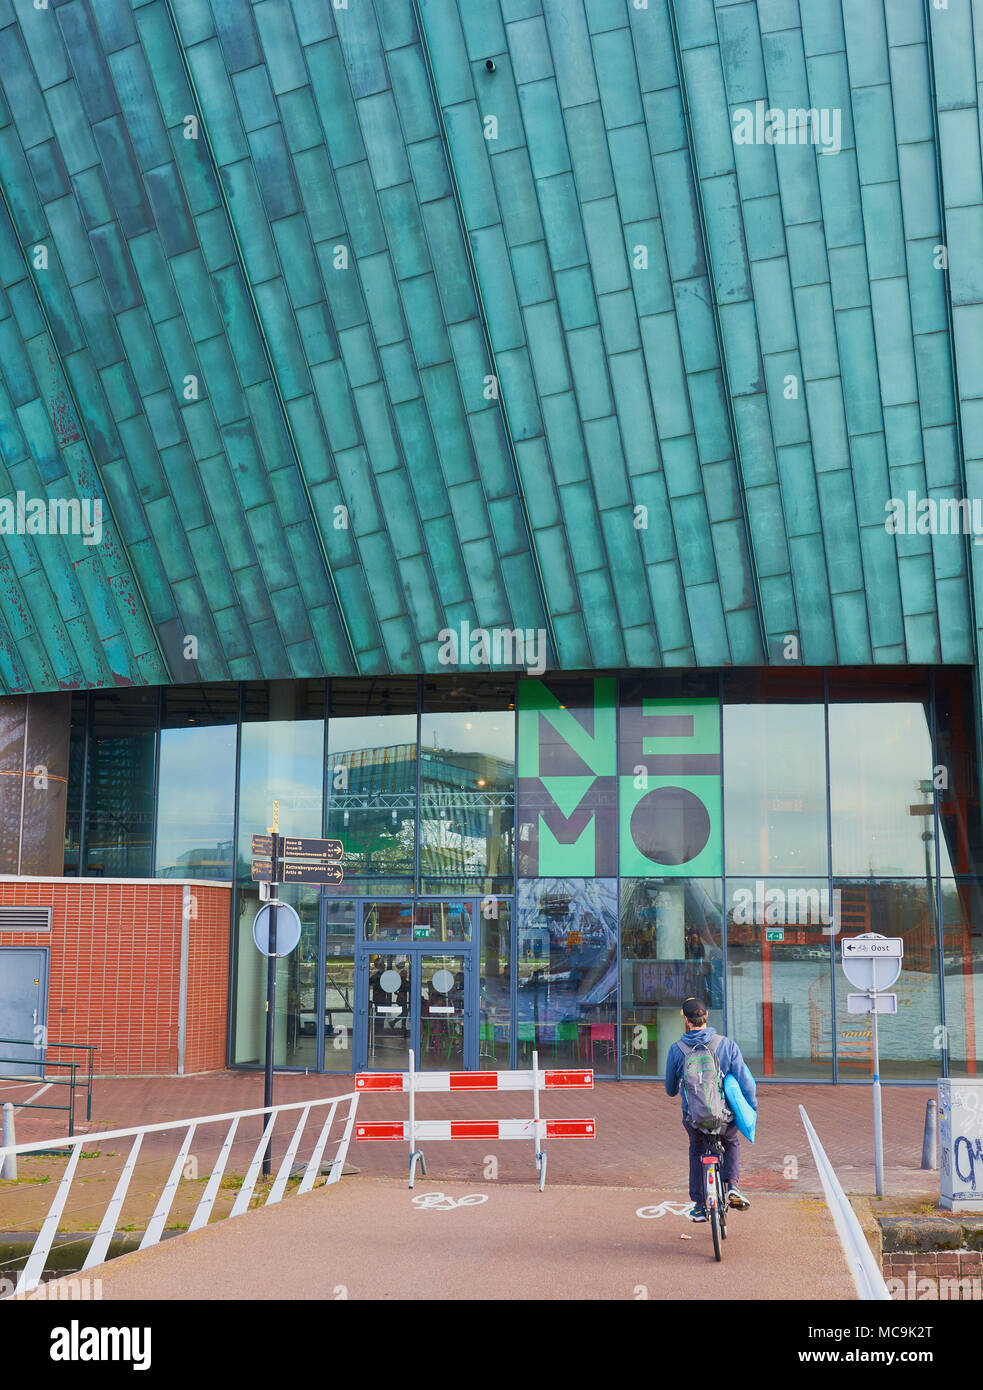 Musée scientifique Nemo, Oosterdokseiland (est de l'île Dock), Amsterdam, Pays-Bas. Conçu par Renzo Piano (1997) Banque D'Images